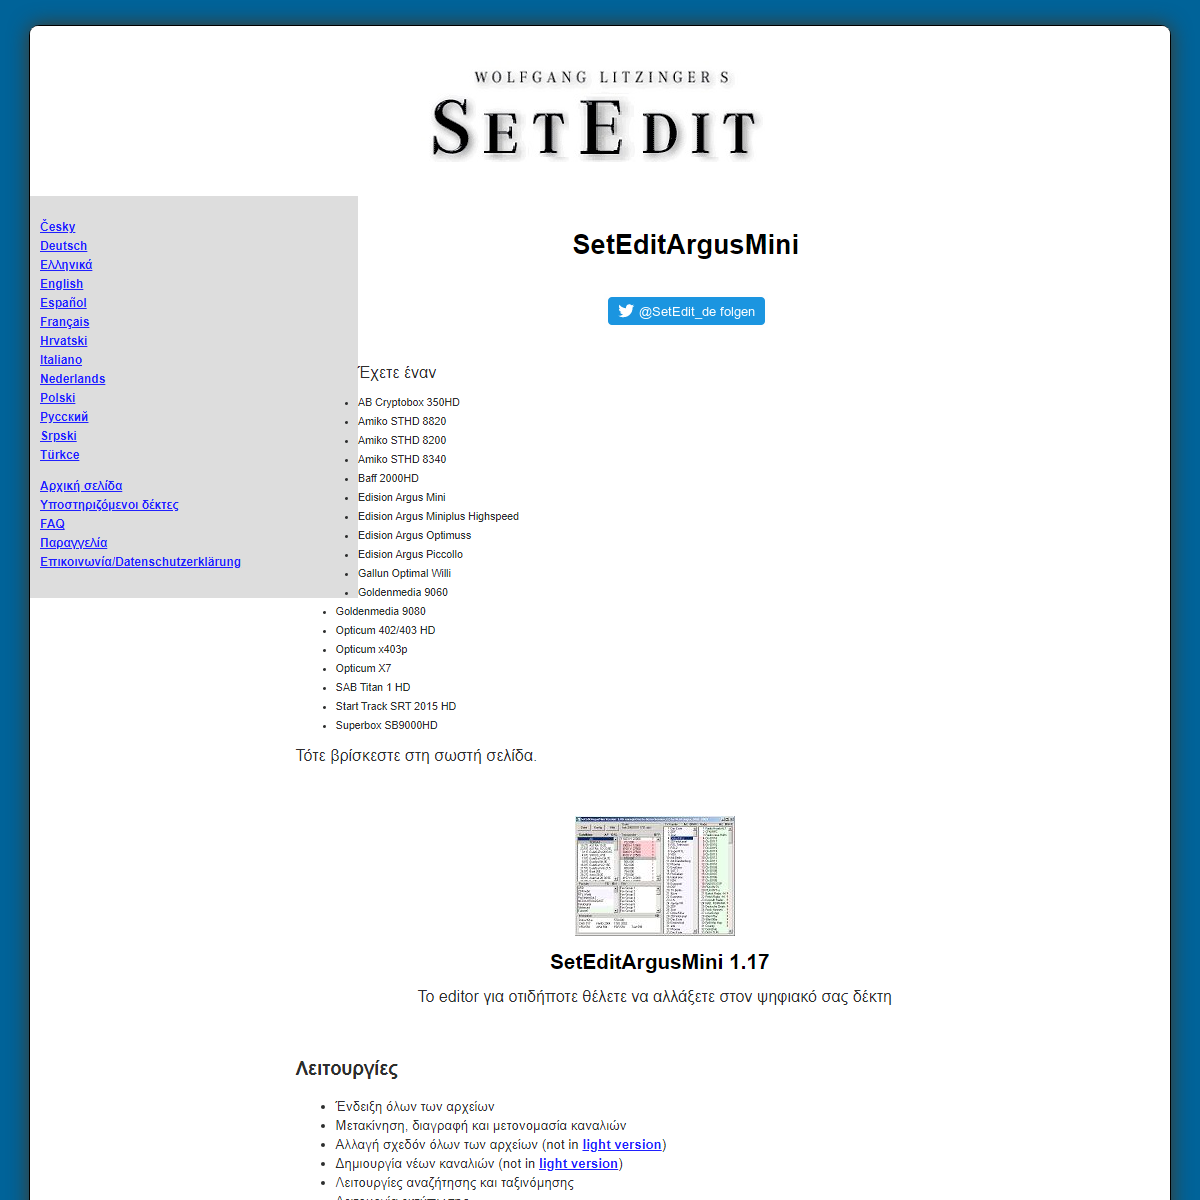 A complete backup of https://www.setedit.de/SetEdit.php?spr=11&Editor=113